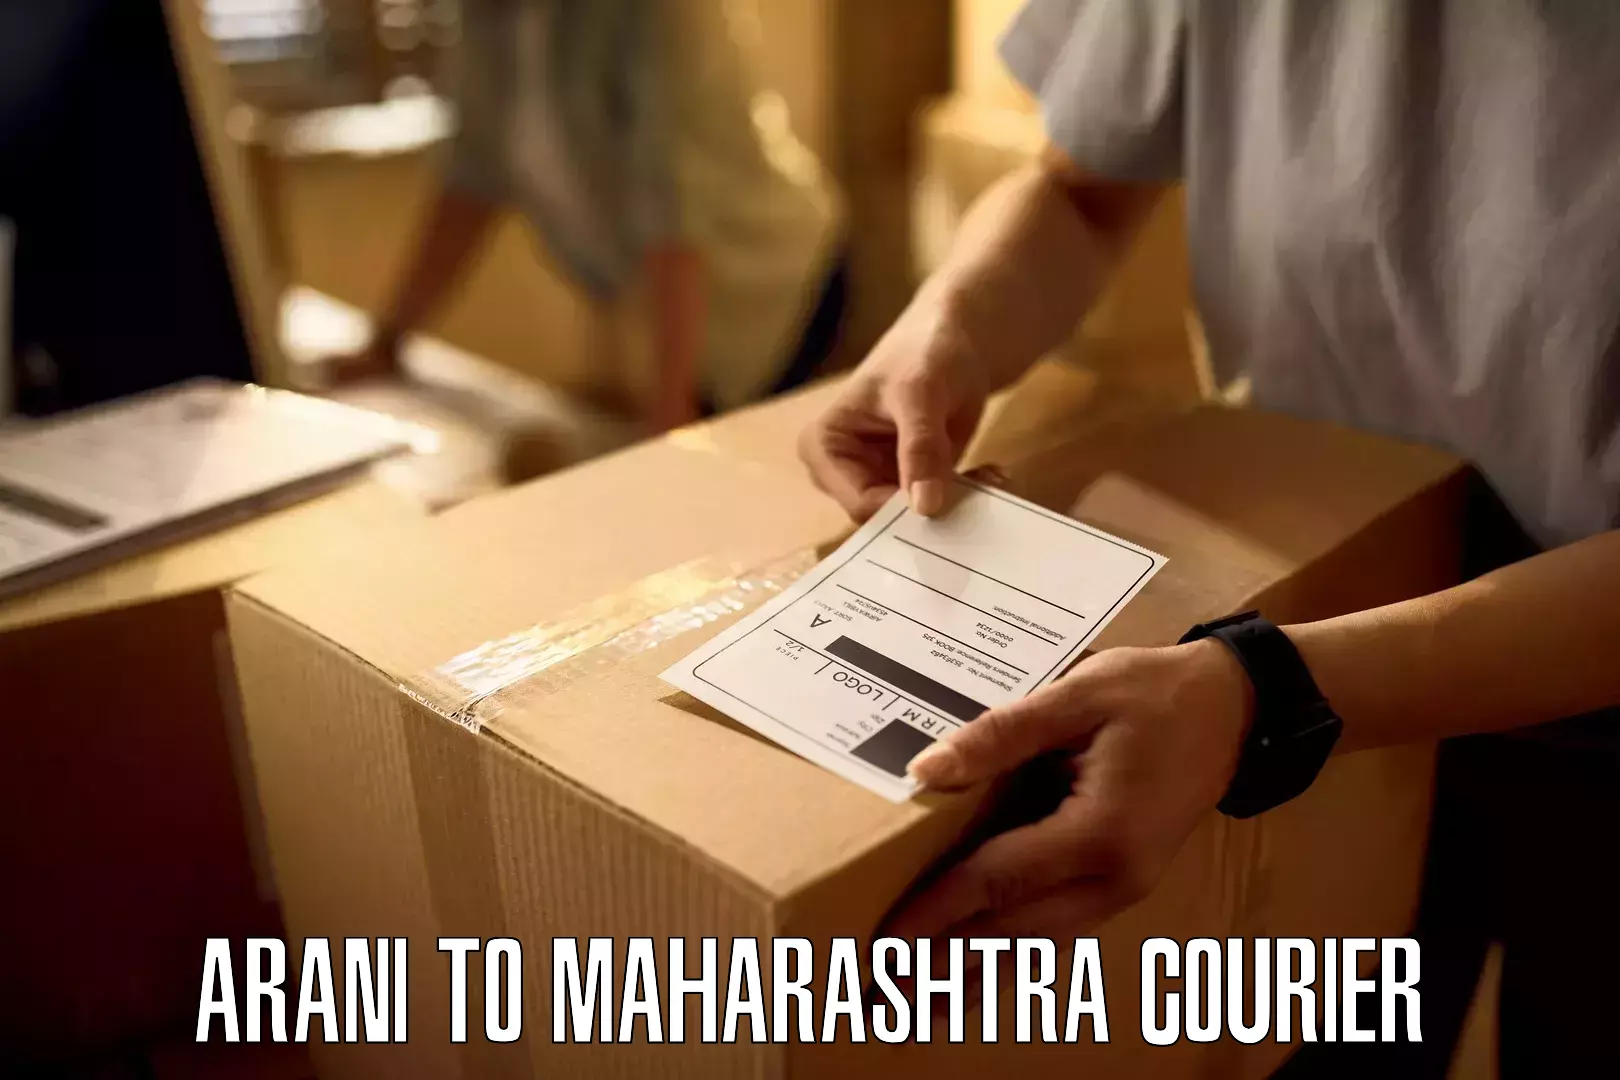 Next-generation courier services Arani to Maharashtra